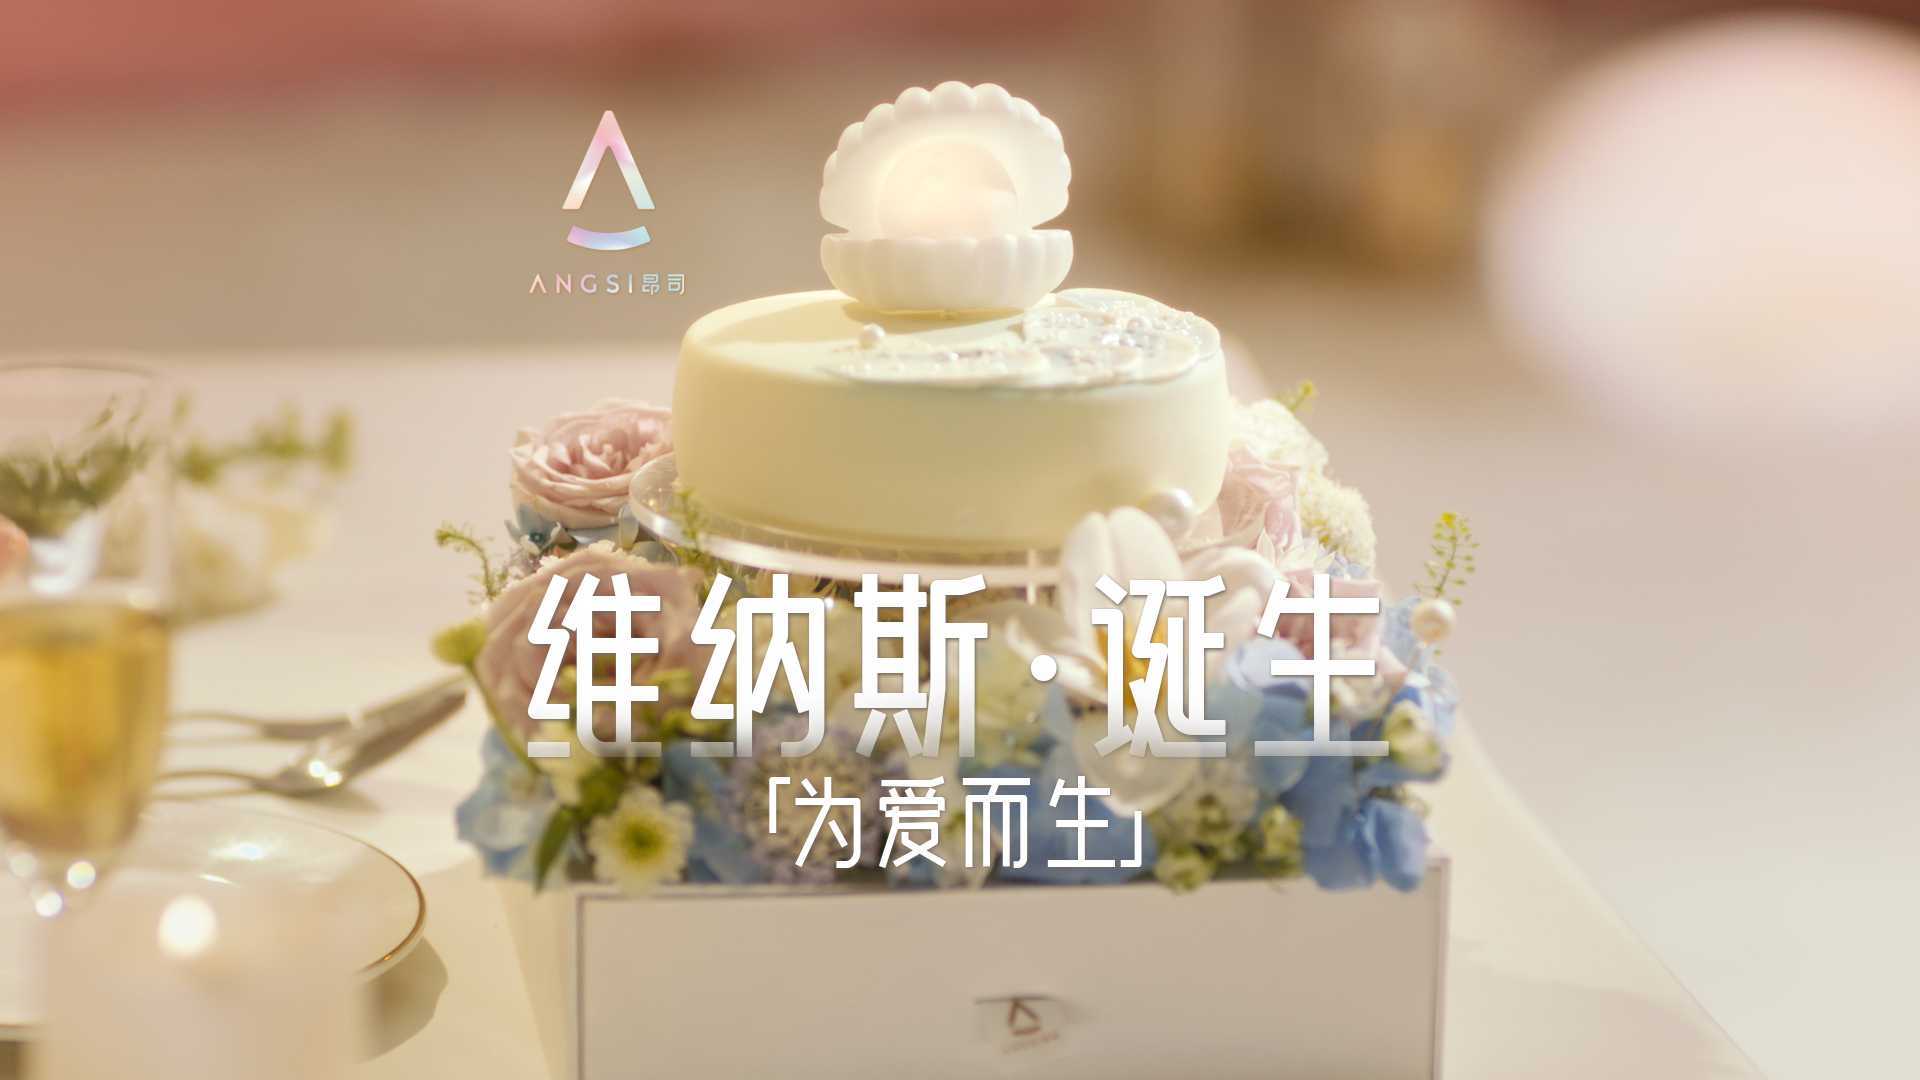 昂司蛋糕 · 声光乐电花系列 · 维纳斯 · 诞生礼盒产品开箱TVC